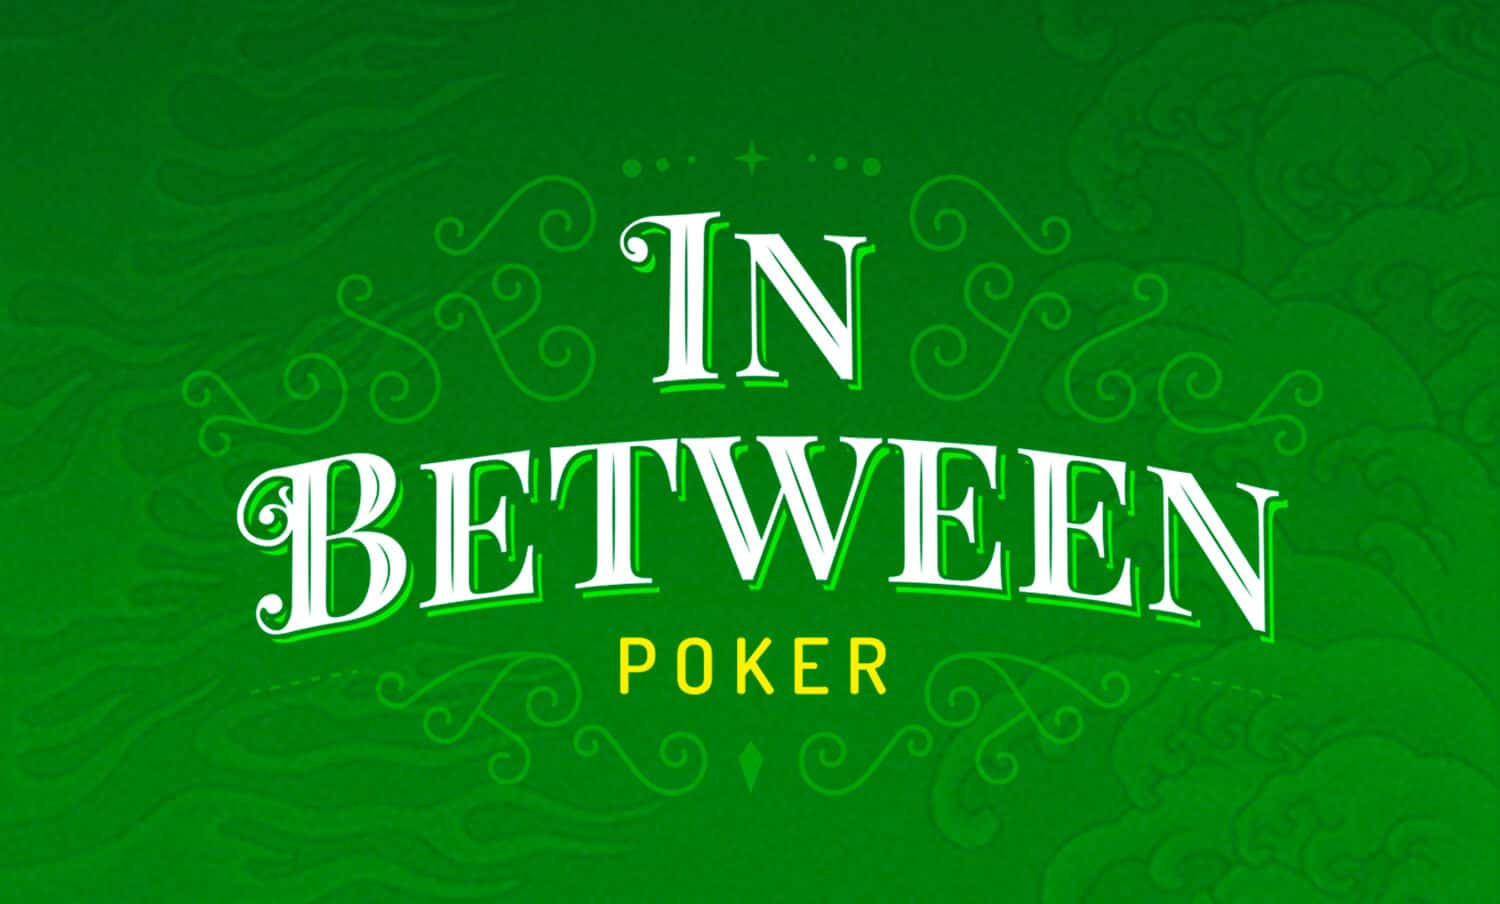 In Between Poker